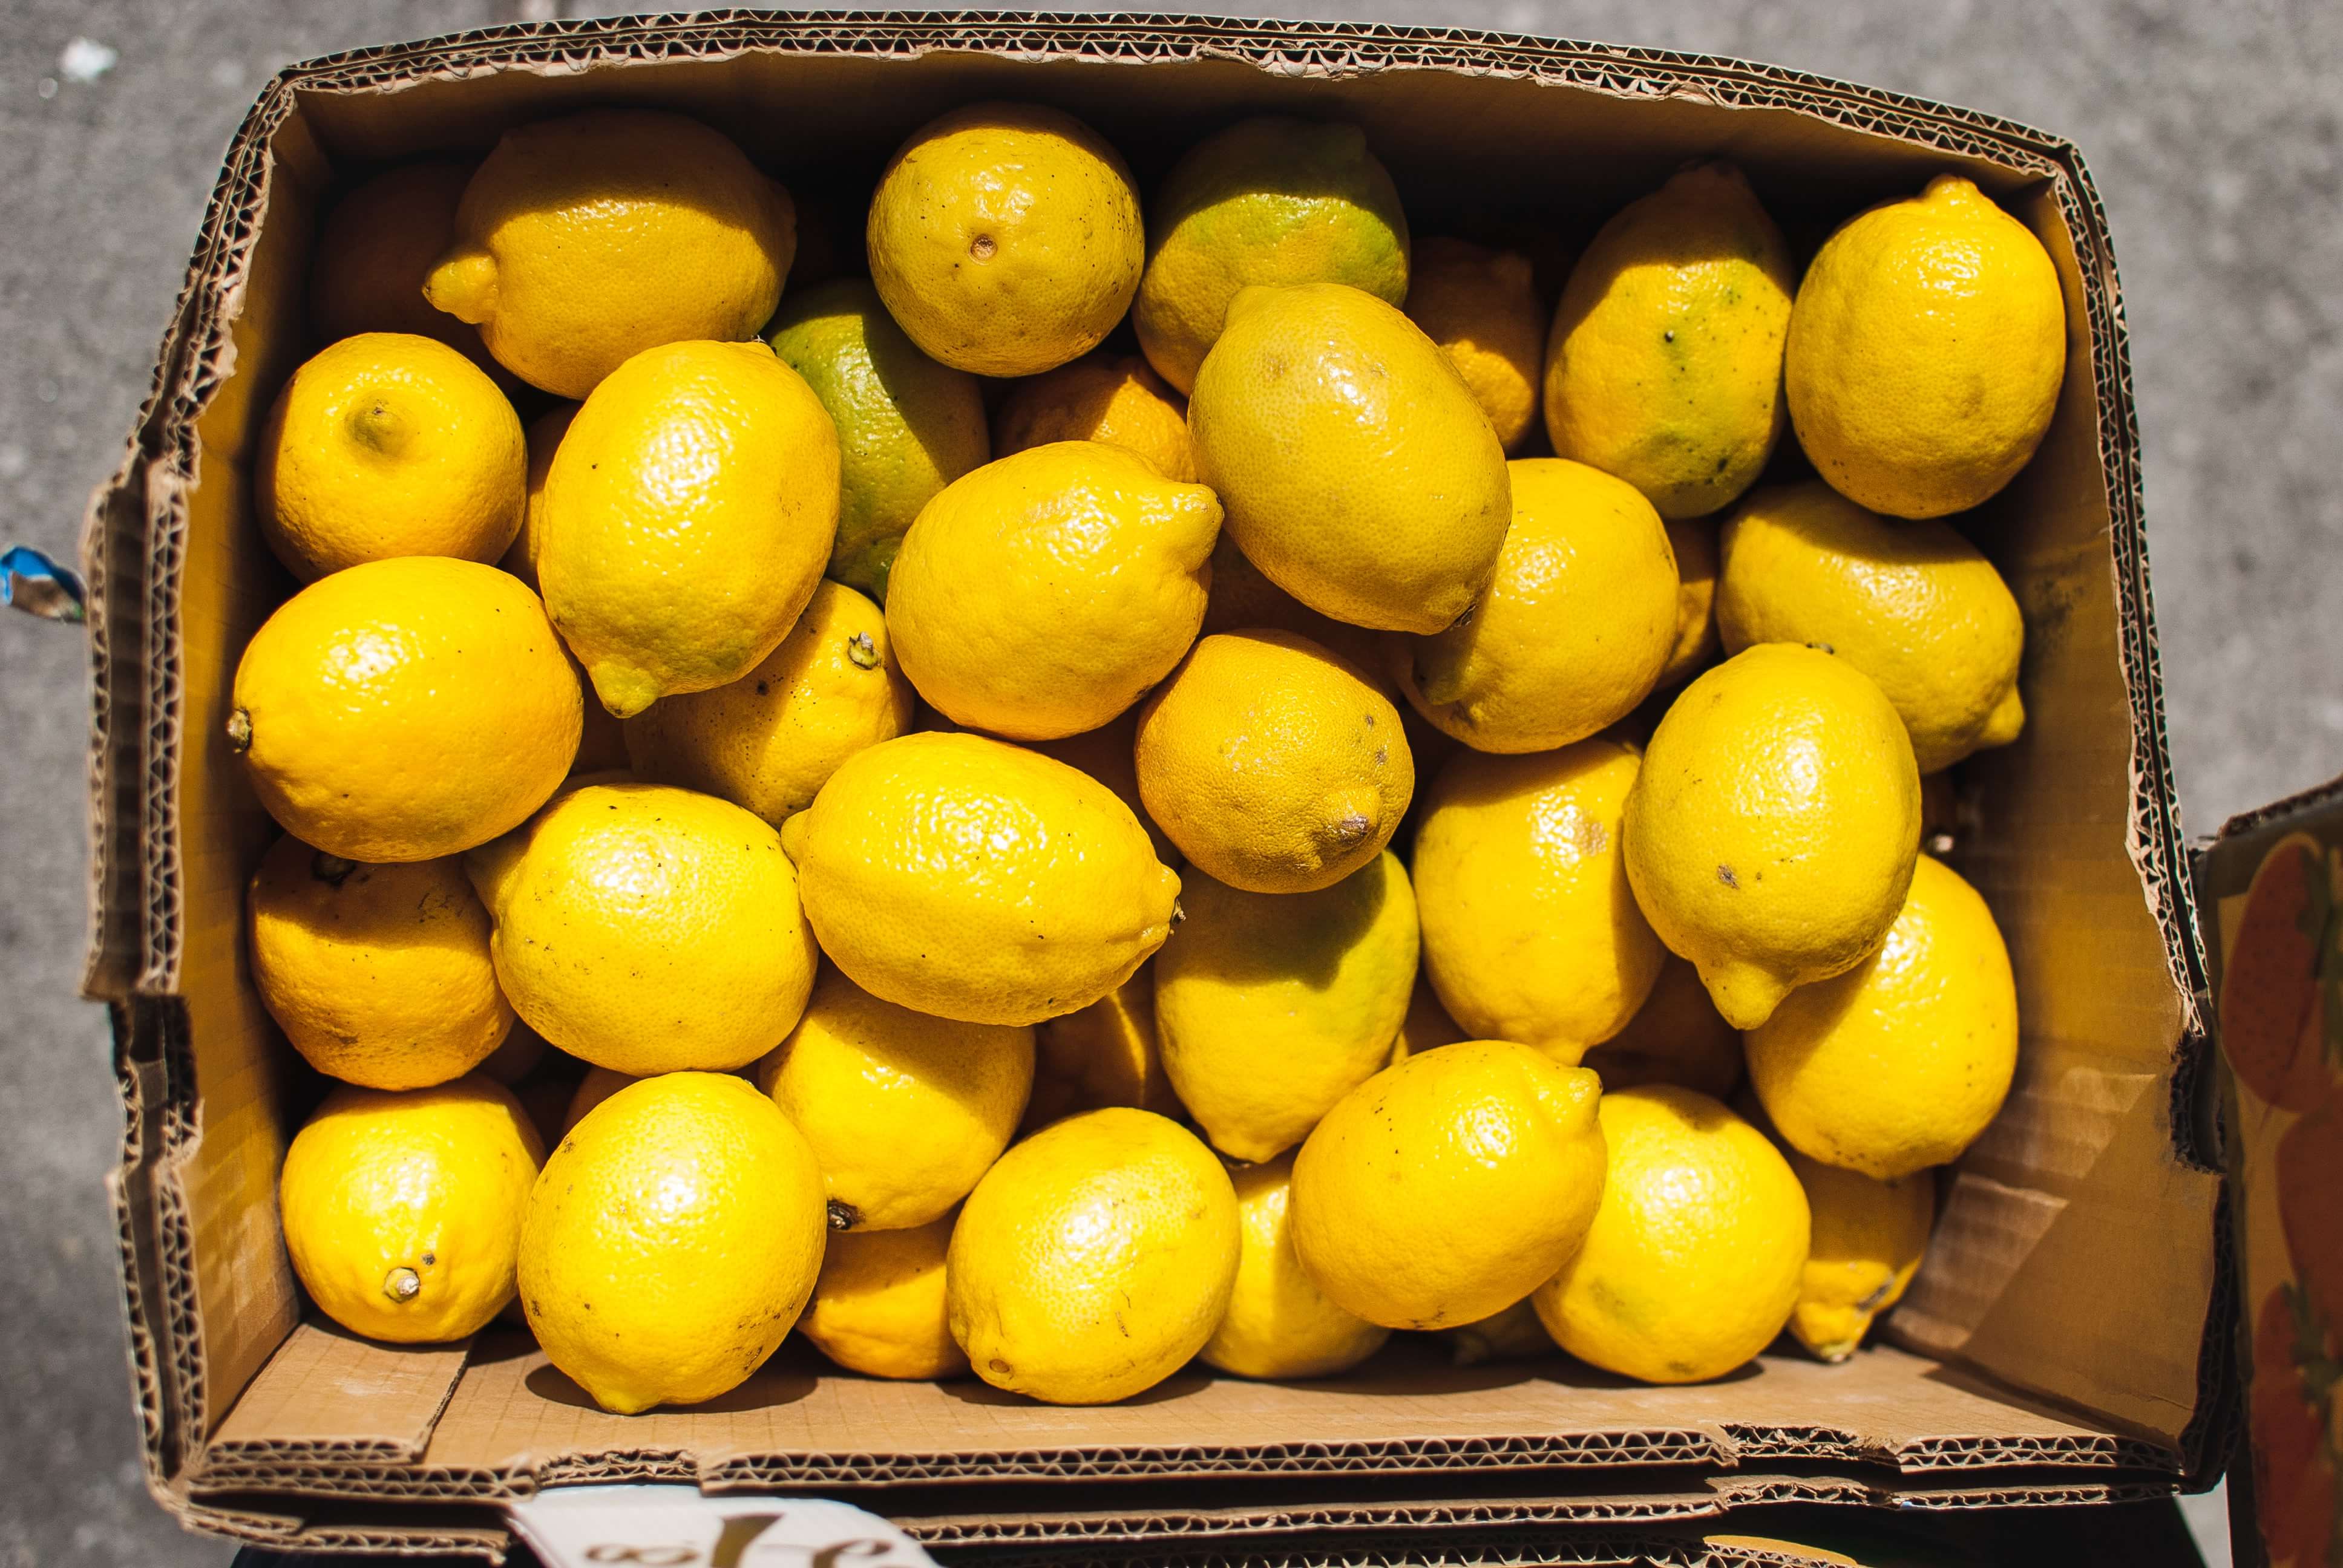 plenty of lemons